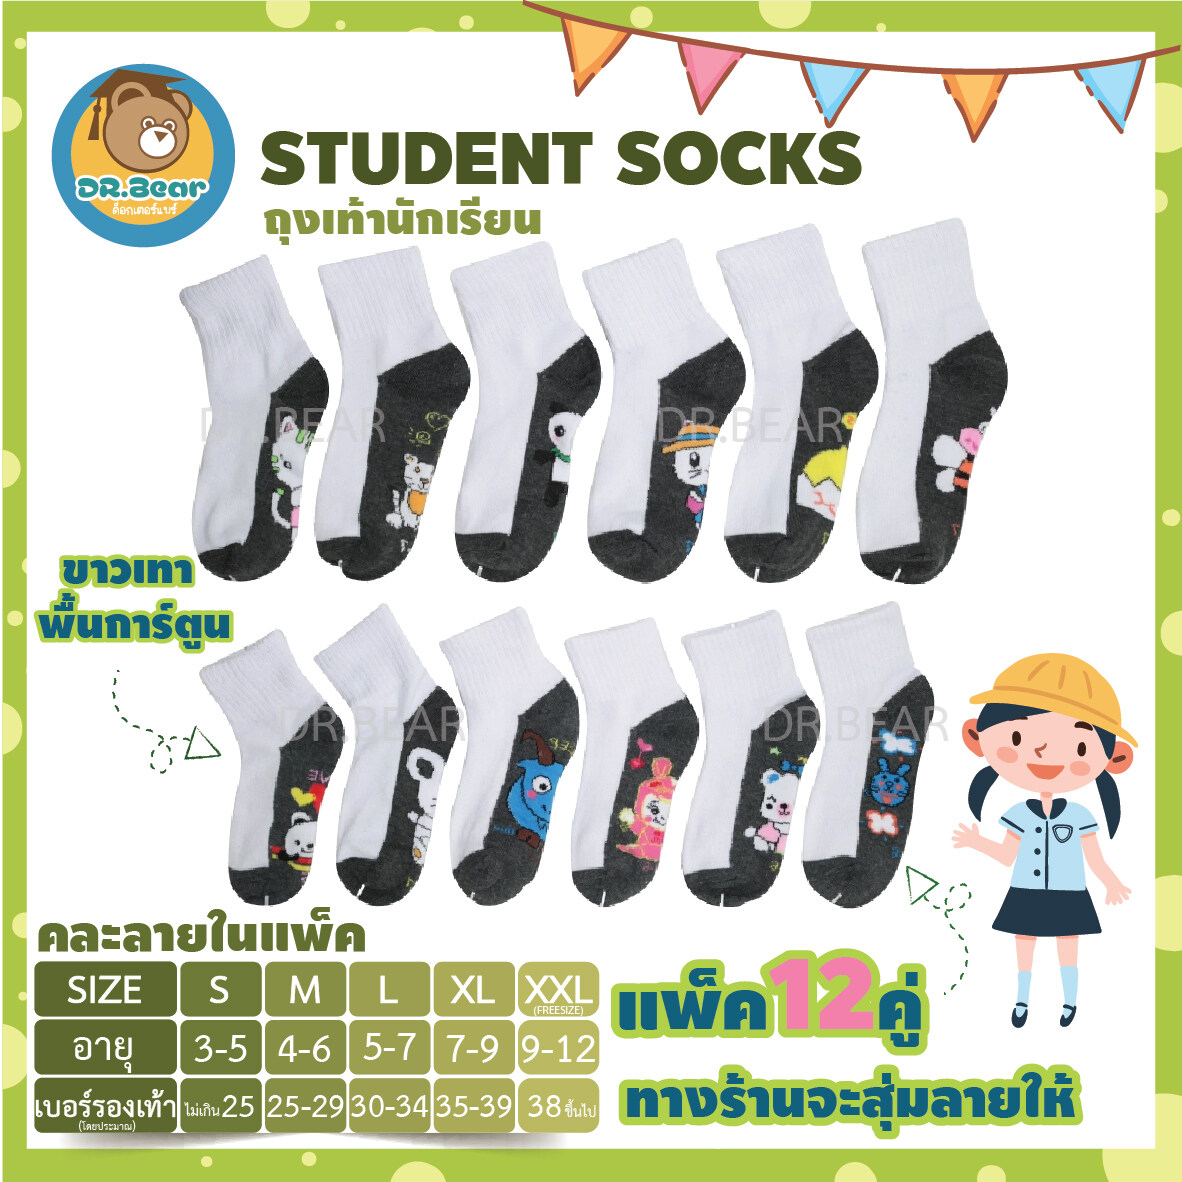 🎉NEW🎉 ถุงเท้านักเรียนข้อสั้นสีขาวพื้น การ์ตูน ข้อสั้นเหนือตาตุ่ม 🔥🔥🔥12คู่ ทางร้านจะสุ่มลายให้เอง👍best socks